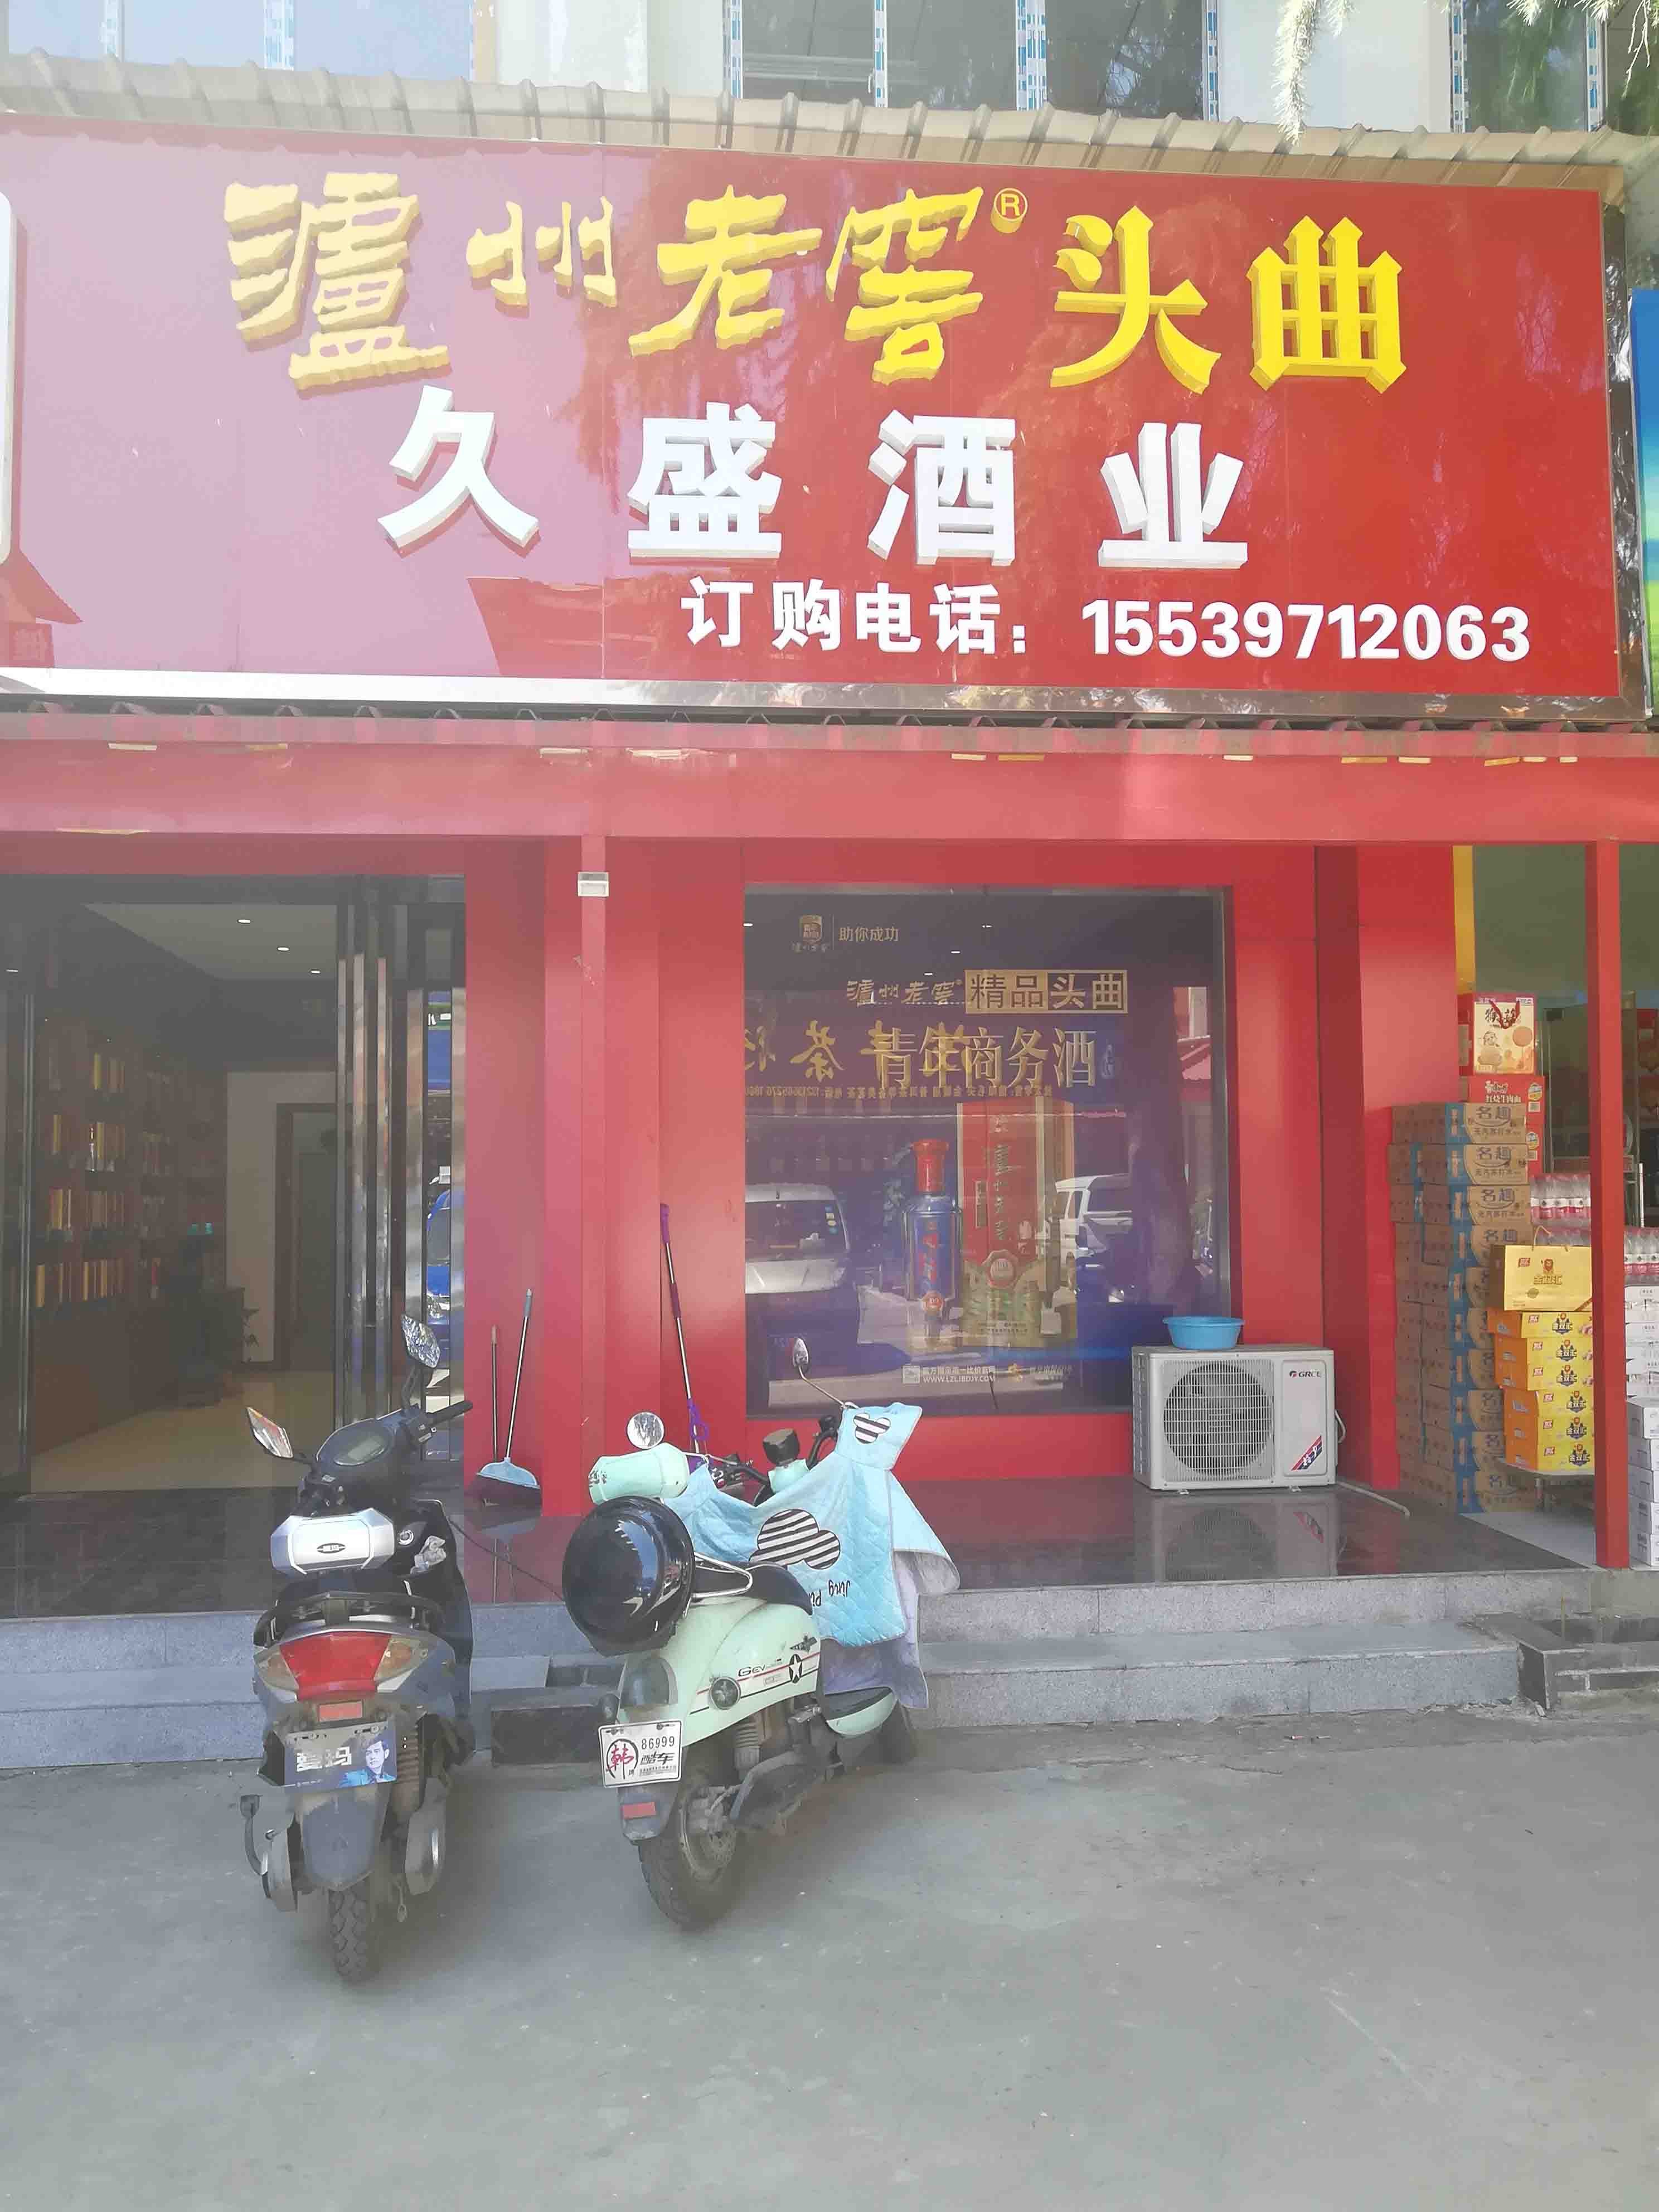 上海市场中街在洛阳出租高端写字楼，专注于寻求办公环境的企业和企业家设计。我们提供豪华写字楼，保证您的商务需求得到满足